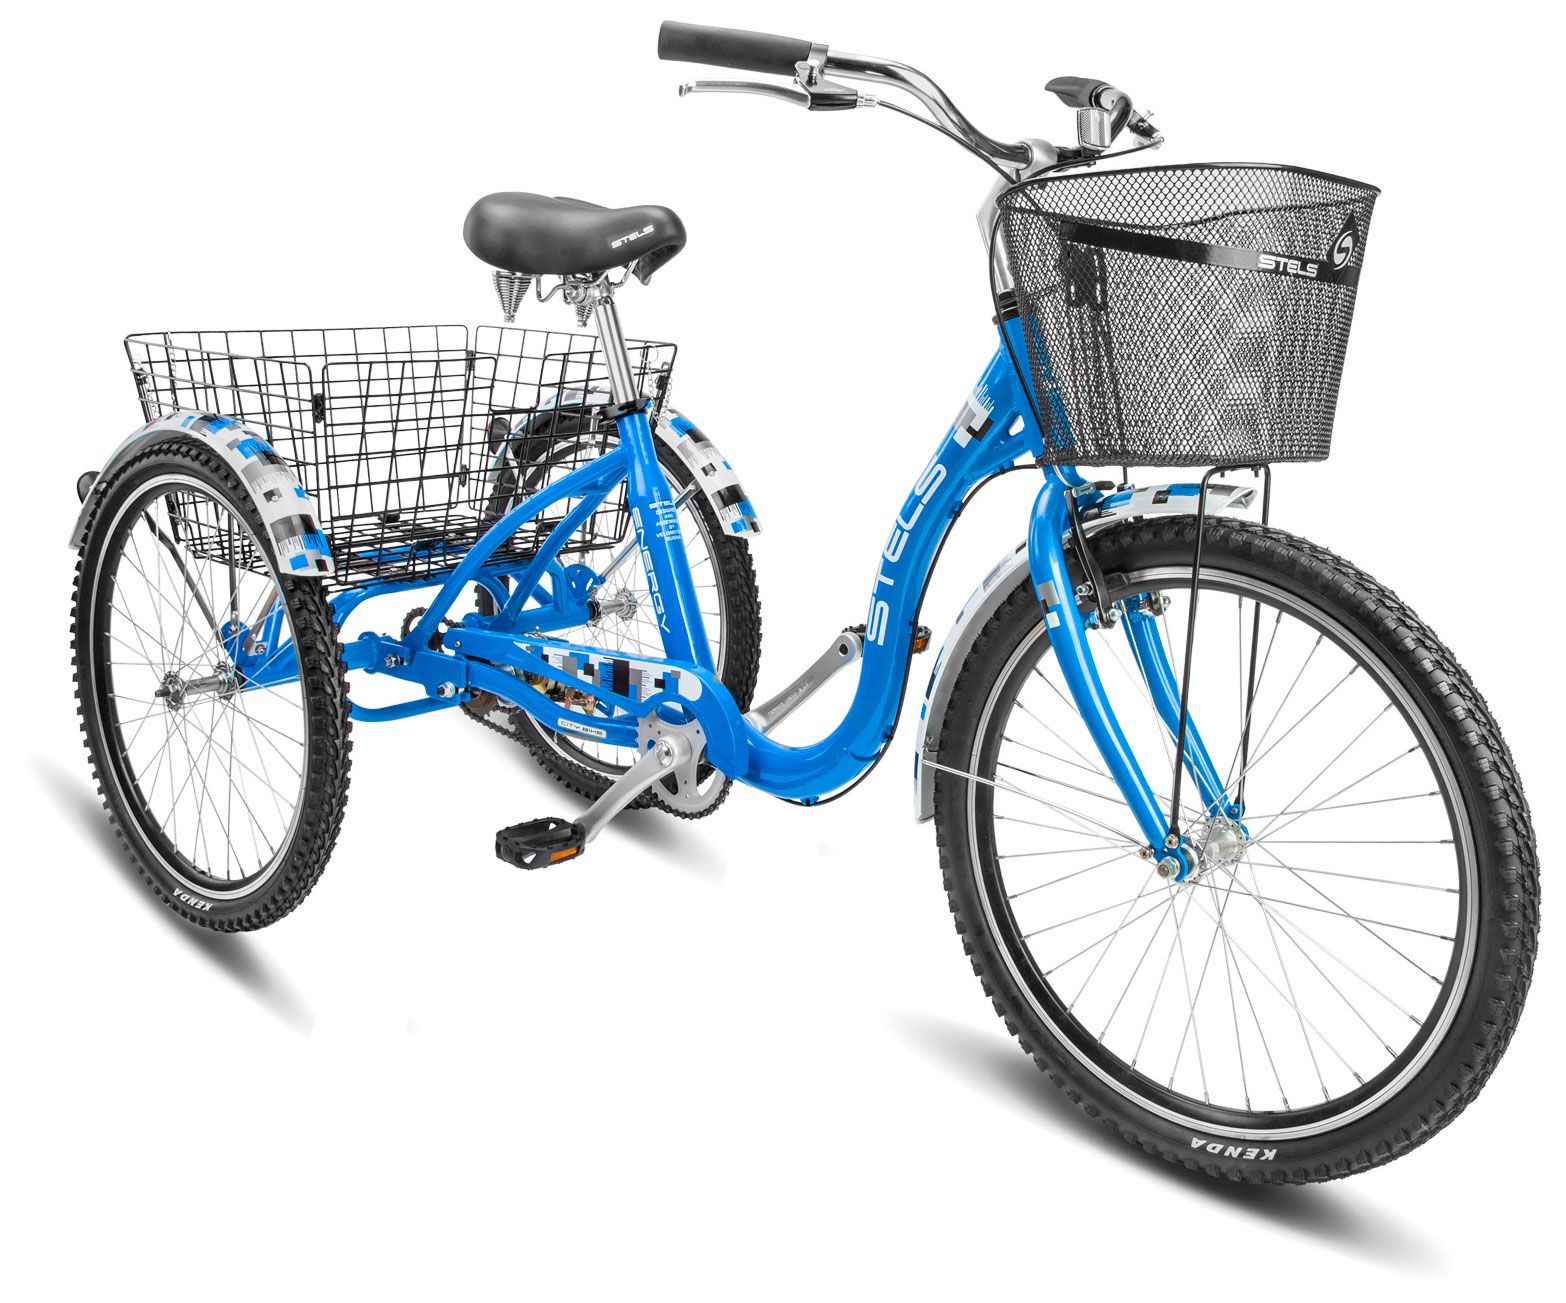  Отзывы о Трехколесный детский велосипед Stels ENERGY IV V020 2018